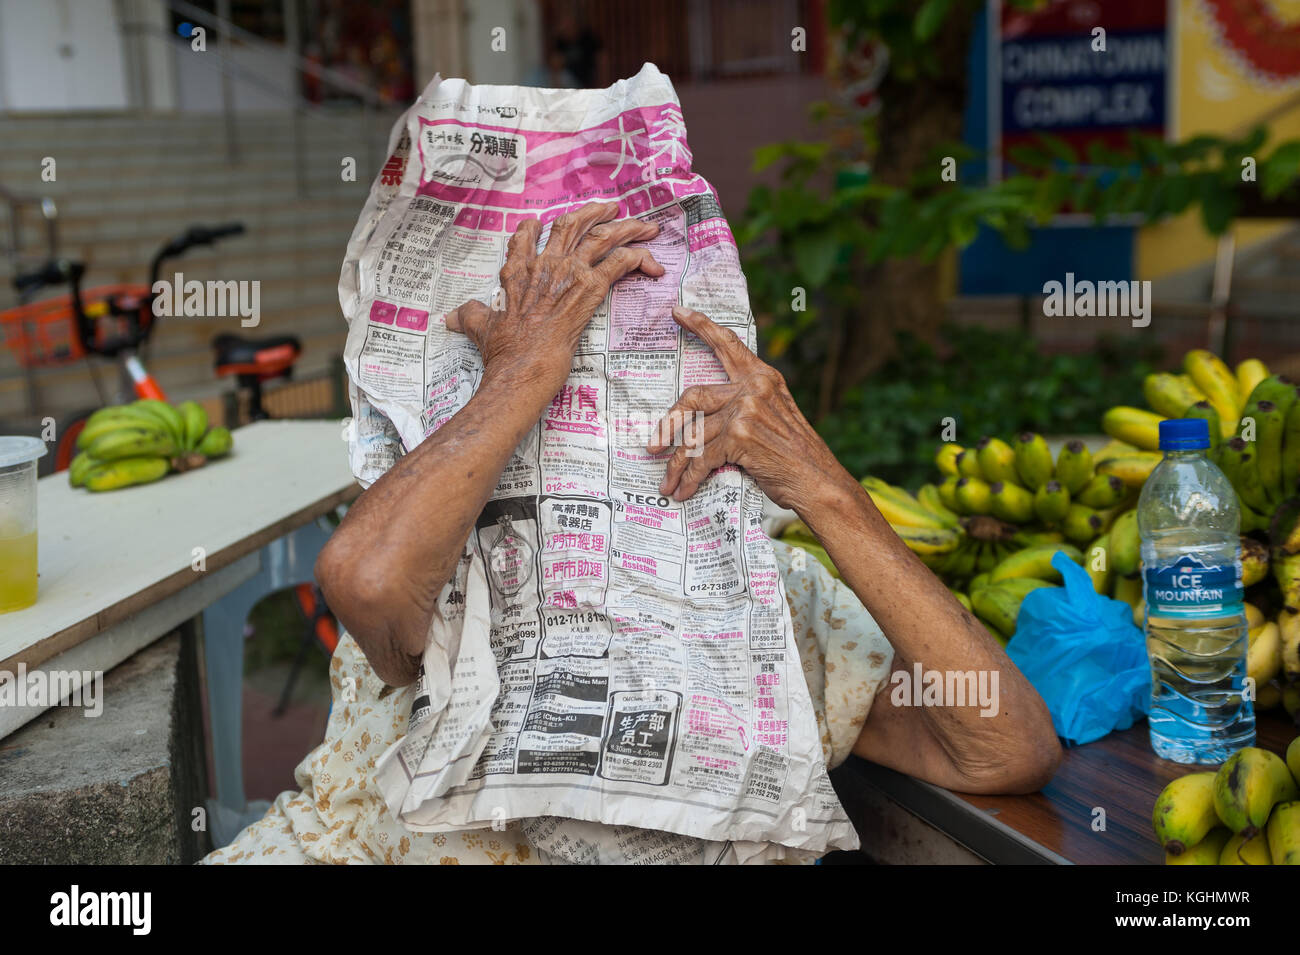 03.11.2017, Singapore, Repubblica di Singapore, in Asia - Una donna anziana che vende le sue banane a Singapore il quartiere Chinatown si nasconde dietro un giornale. Foto Stock